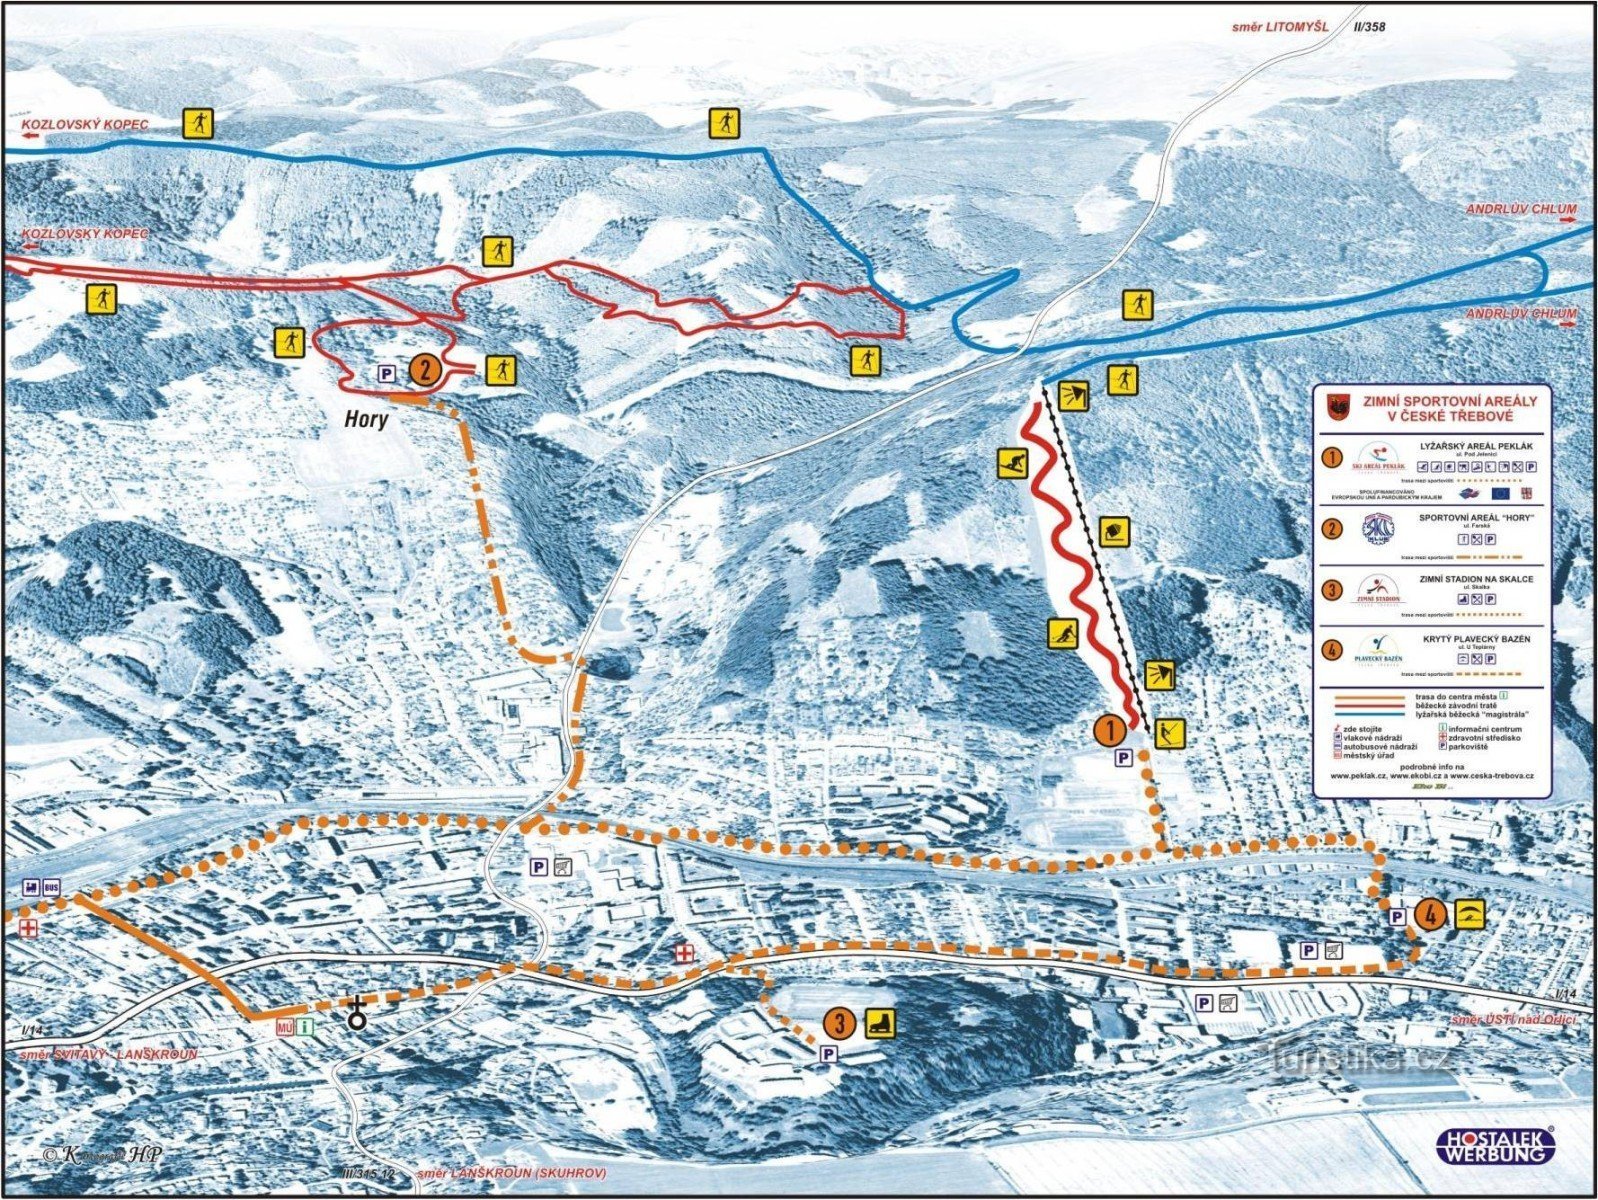 Peklákin hiihtoalueen kartta